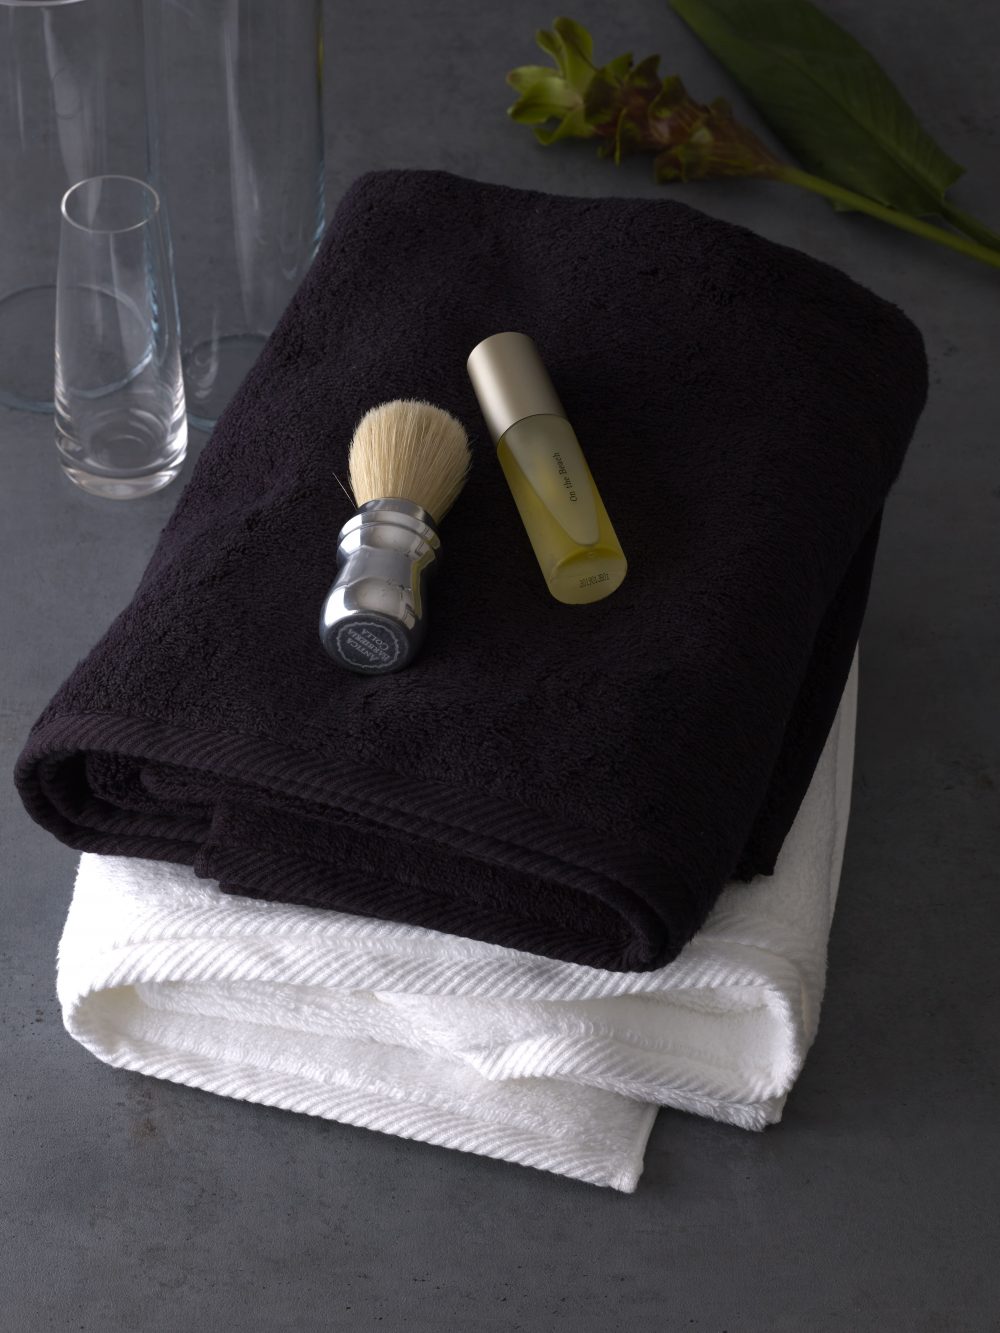 日本ギフト大賞受賞の『マイクロコットン』は、こだわりぬかれた最高品質タオル